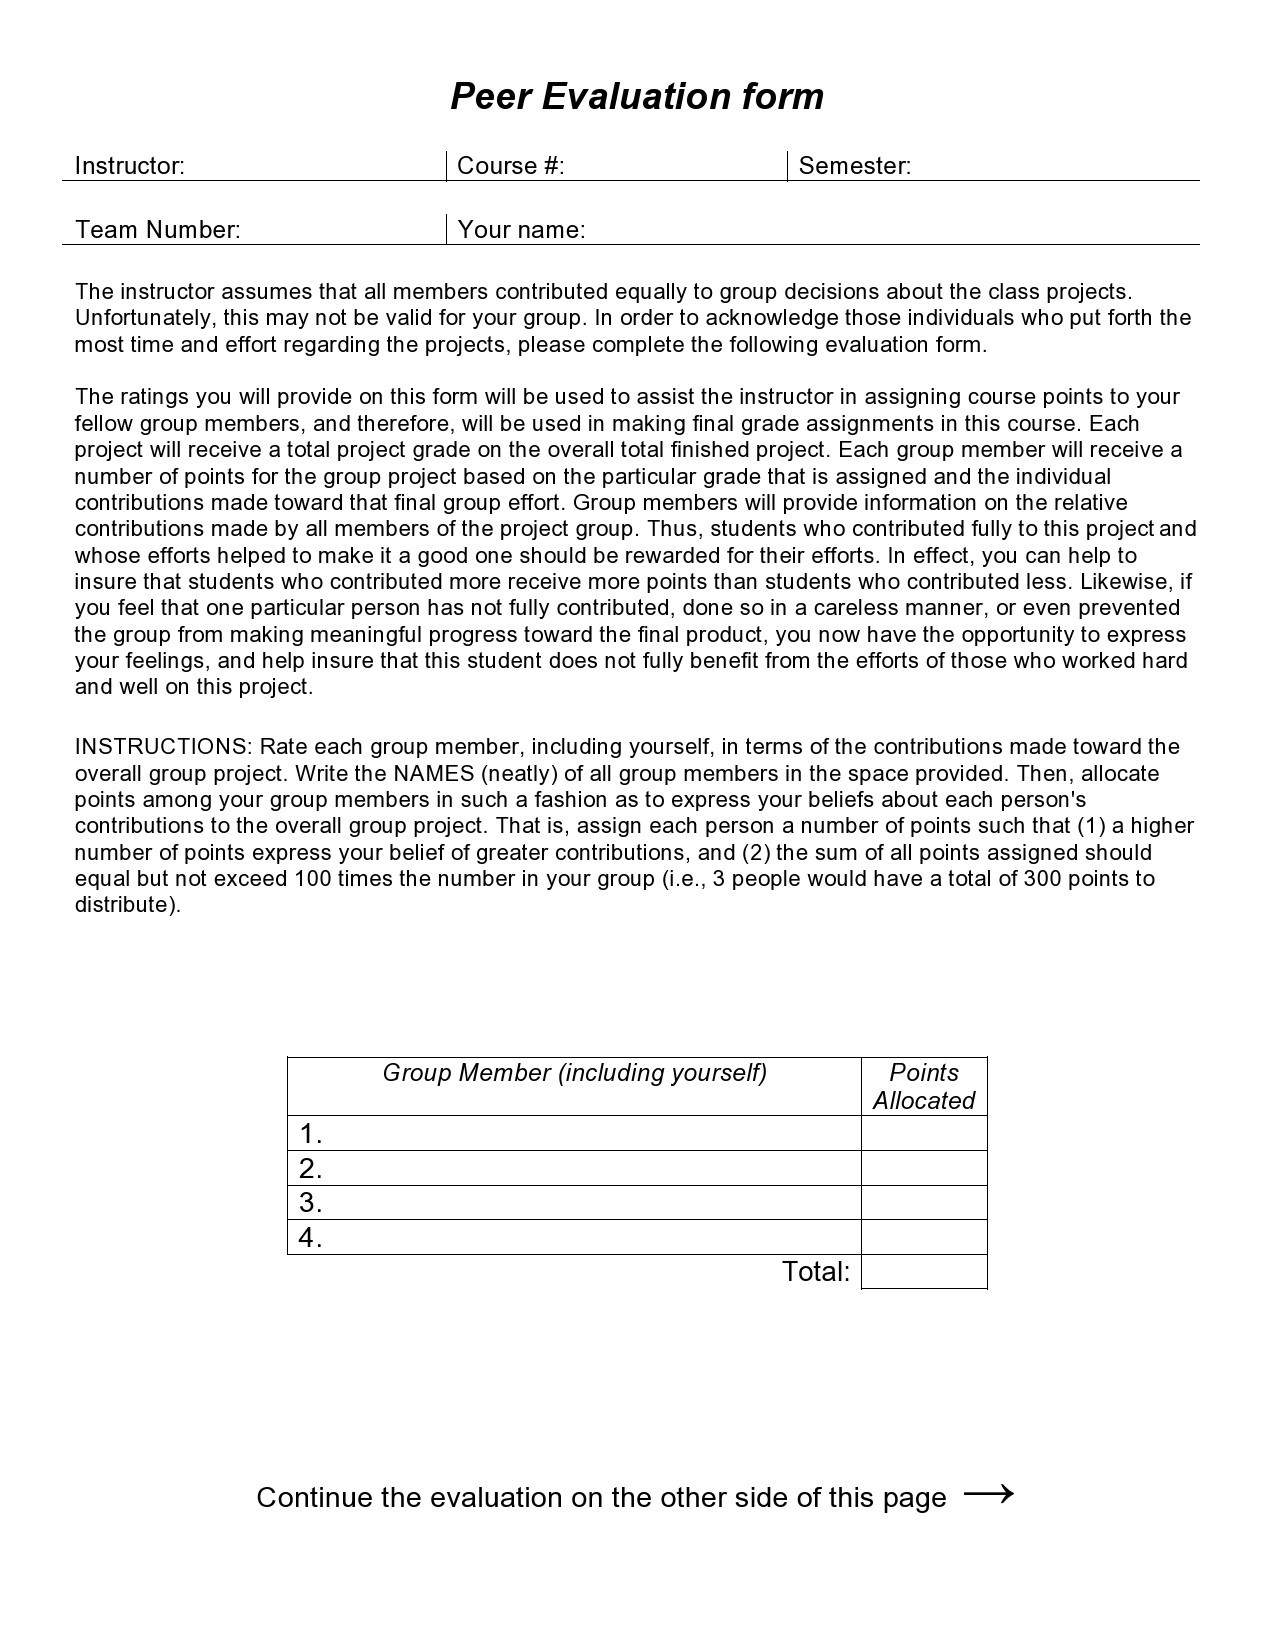 Free peer evaluation form 01